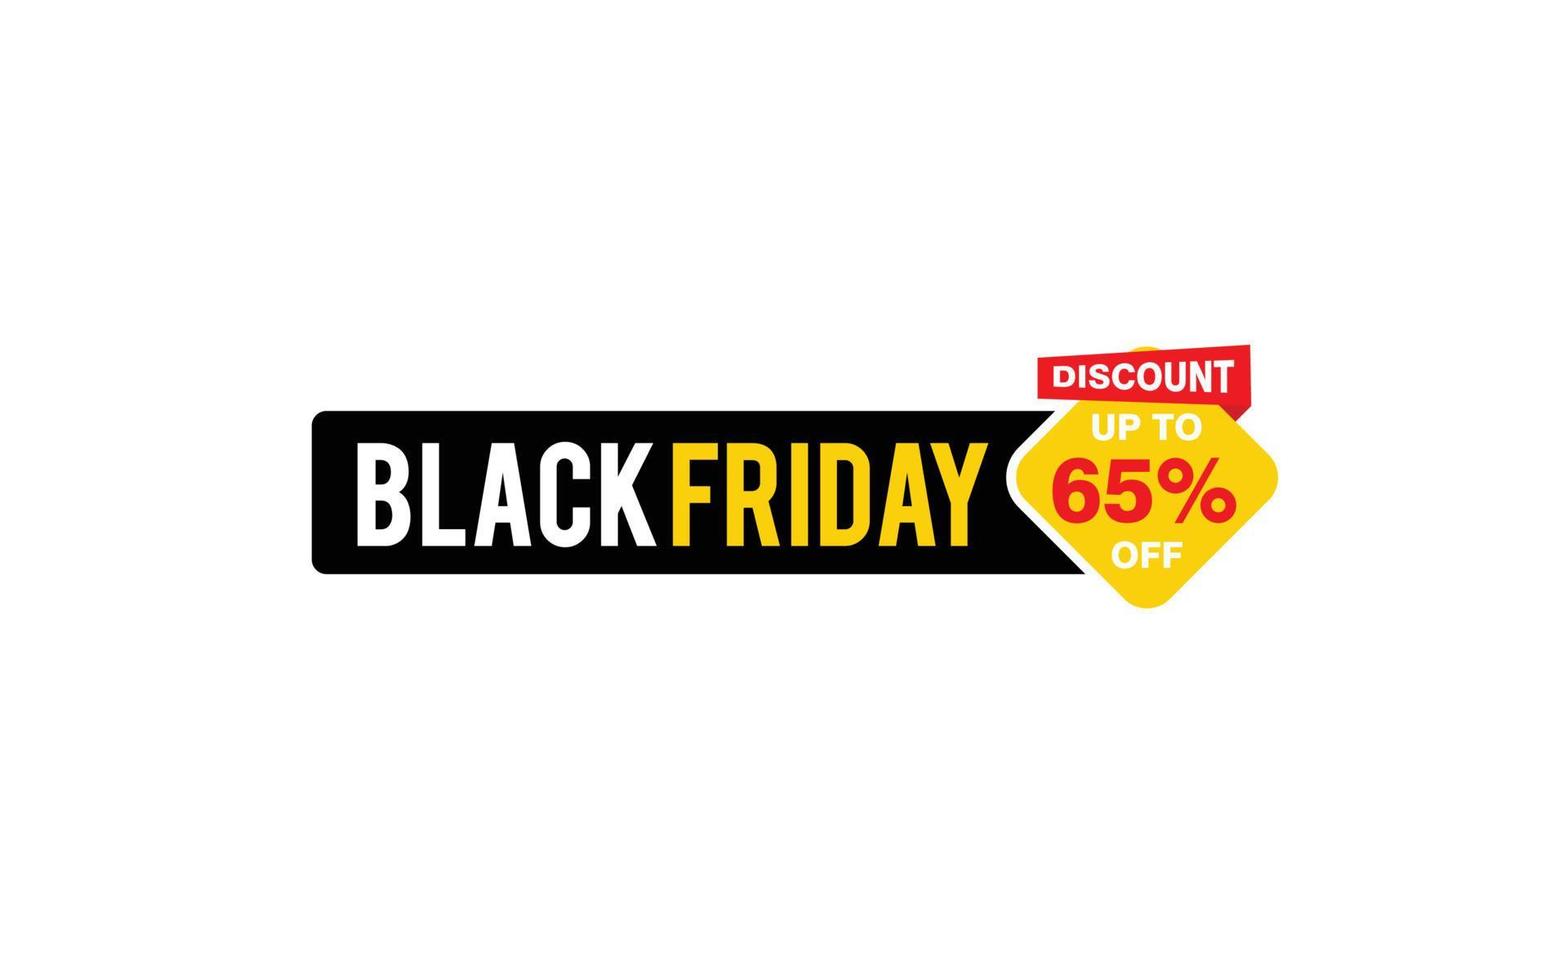 Oferta de sexta-feira negra com desconto de 65%, liberação, layout de banner de promoção com estilo de adesivo. vetor